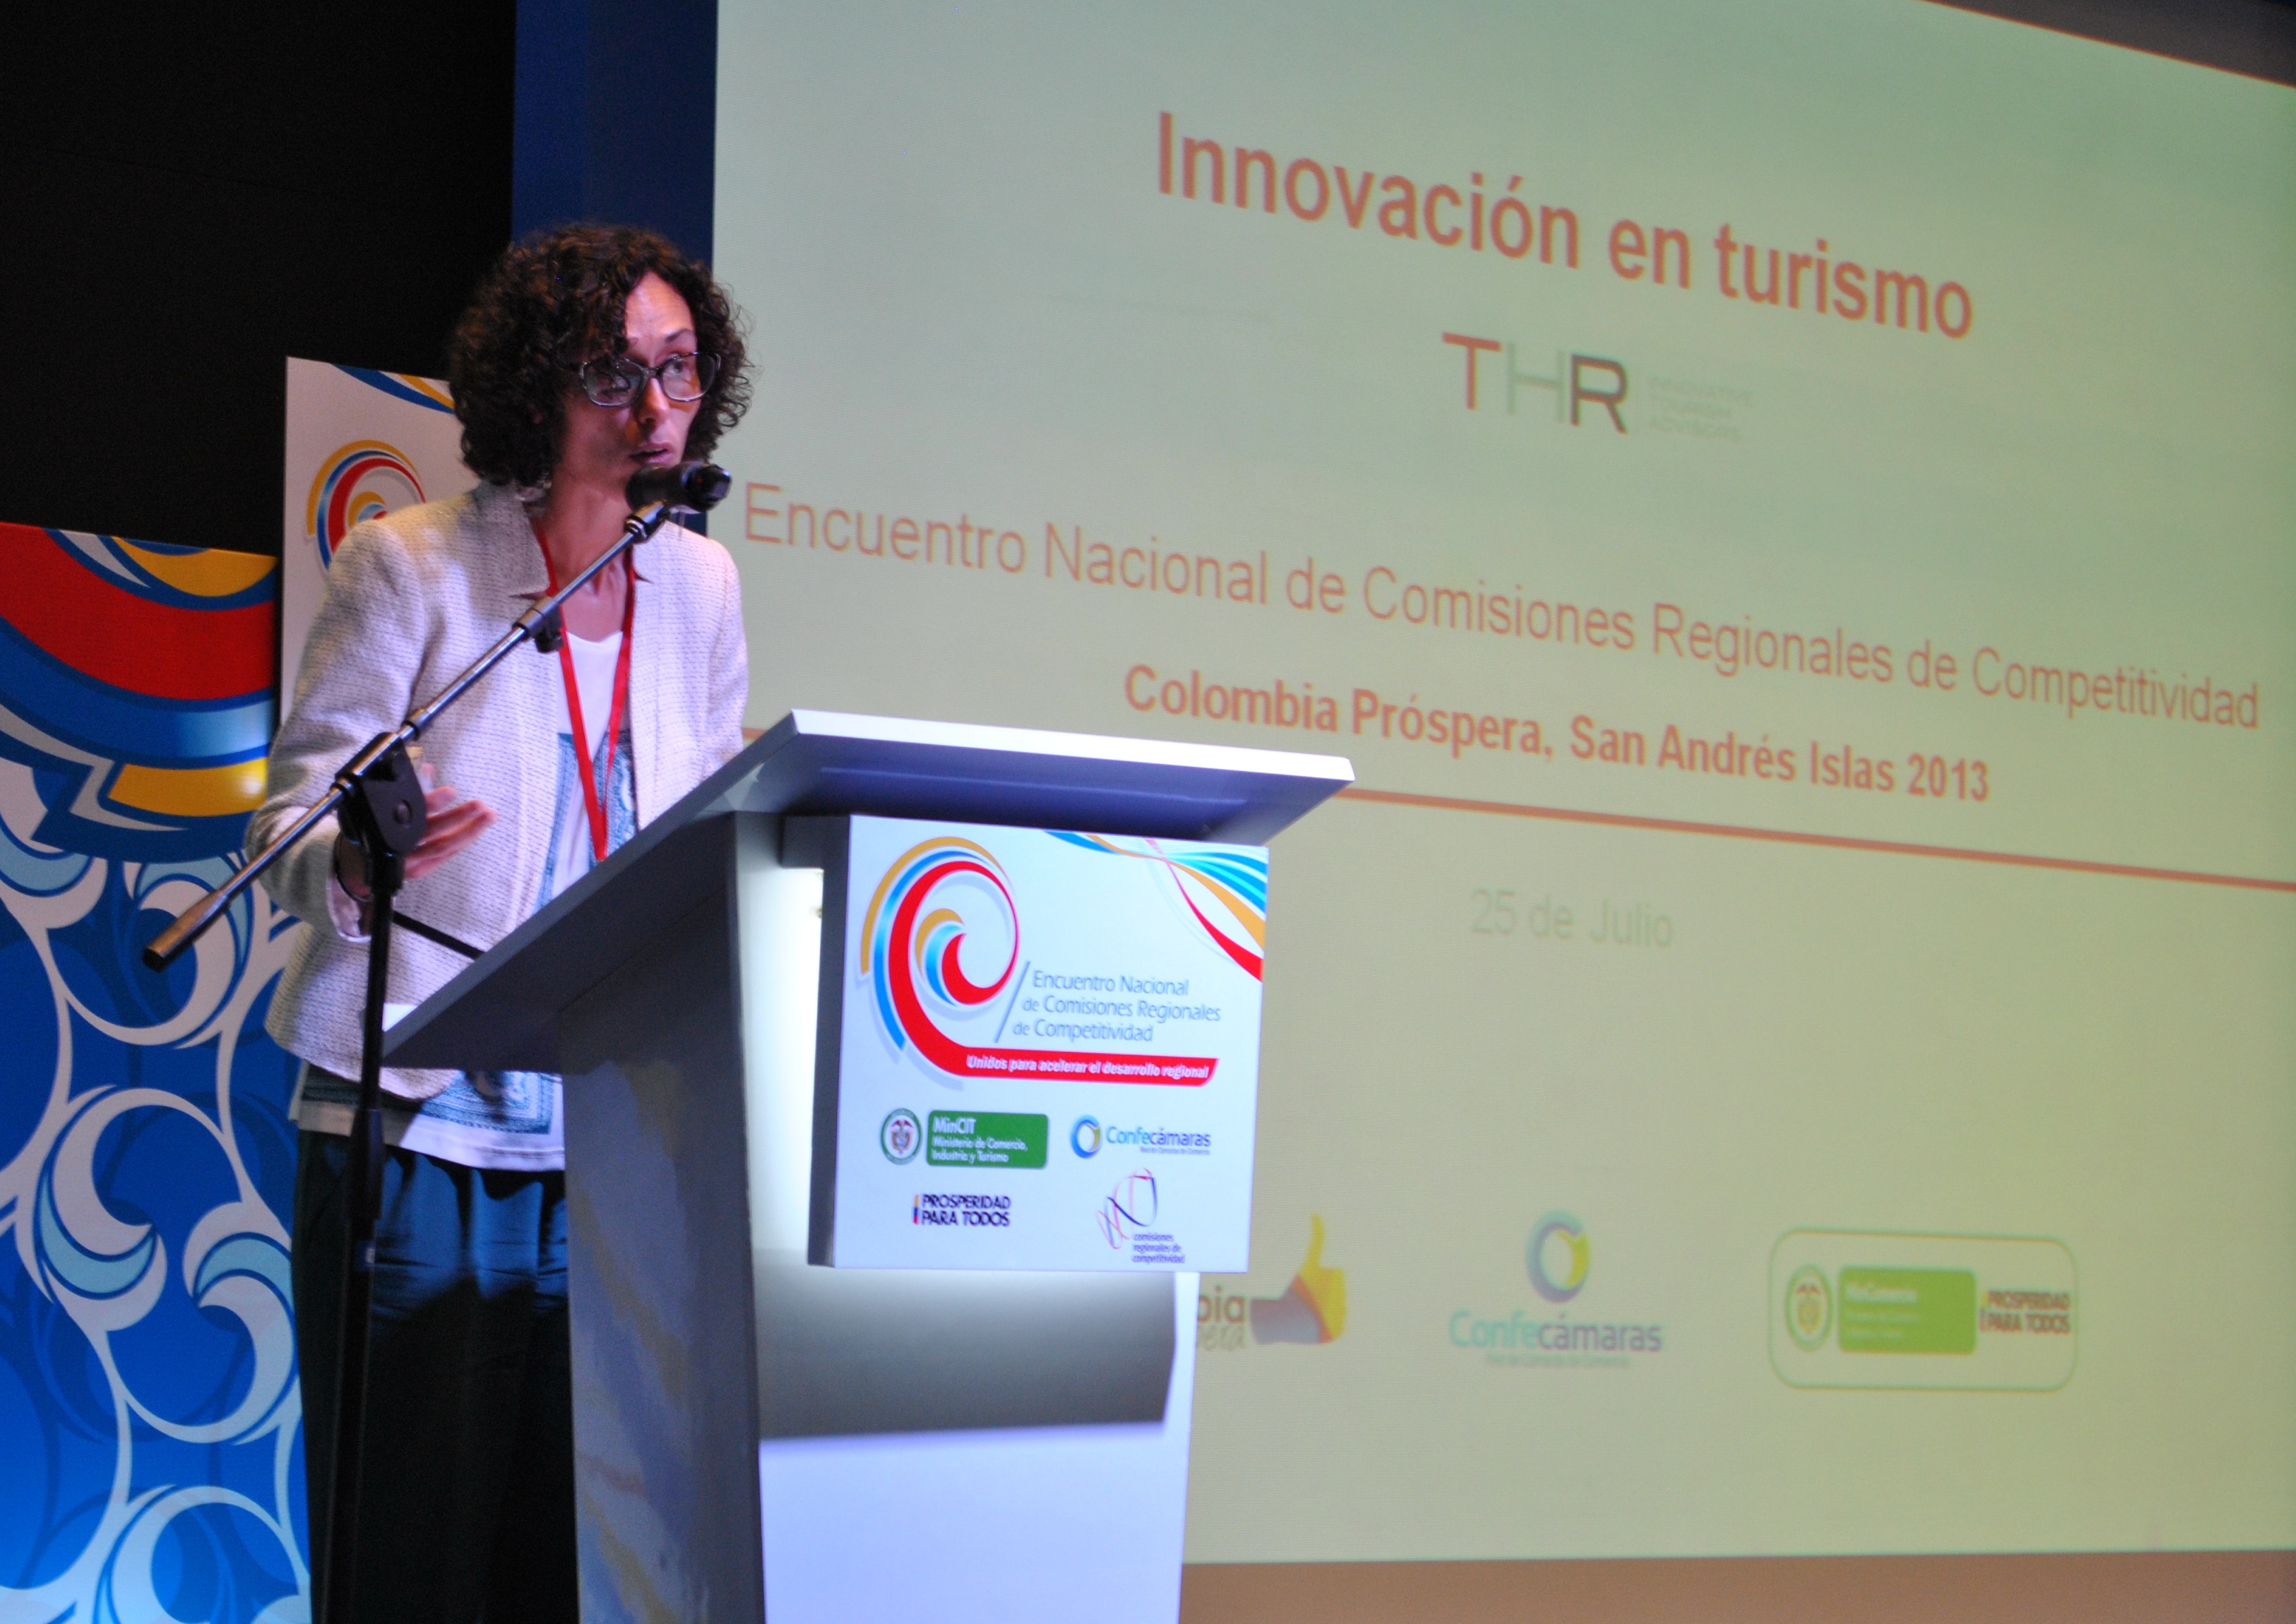 Sonia Huertas, Manager Innovate Tourism Advisors